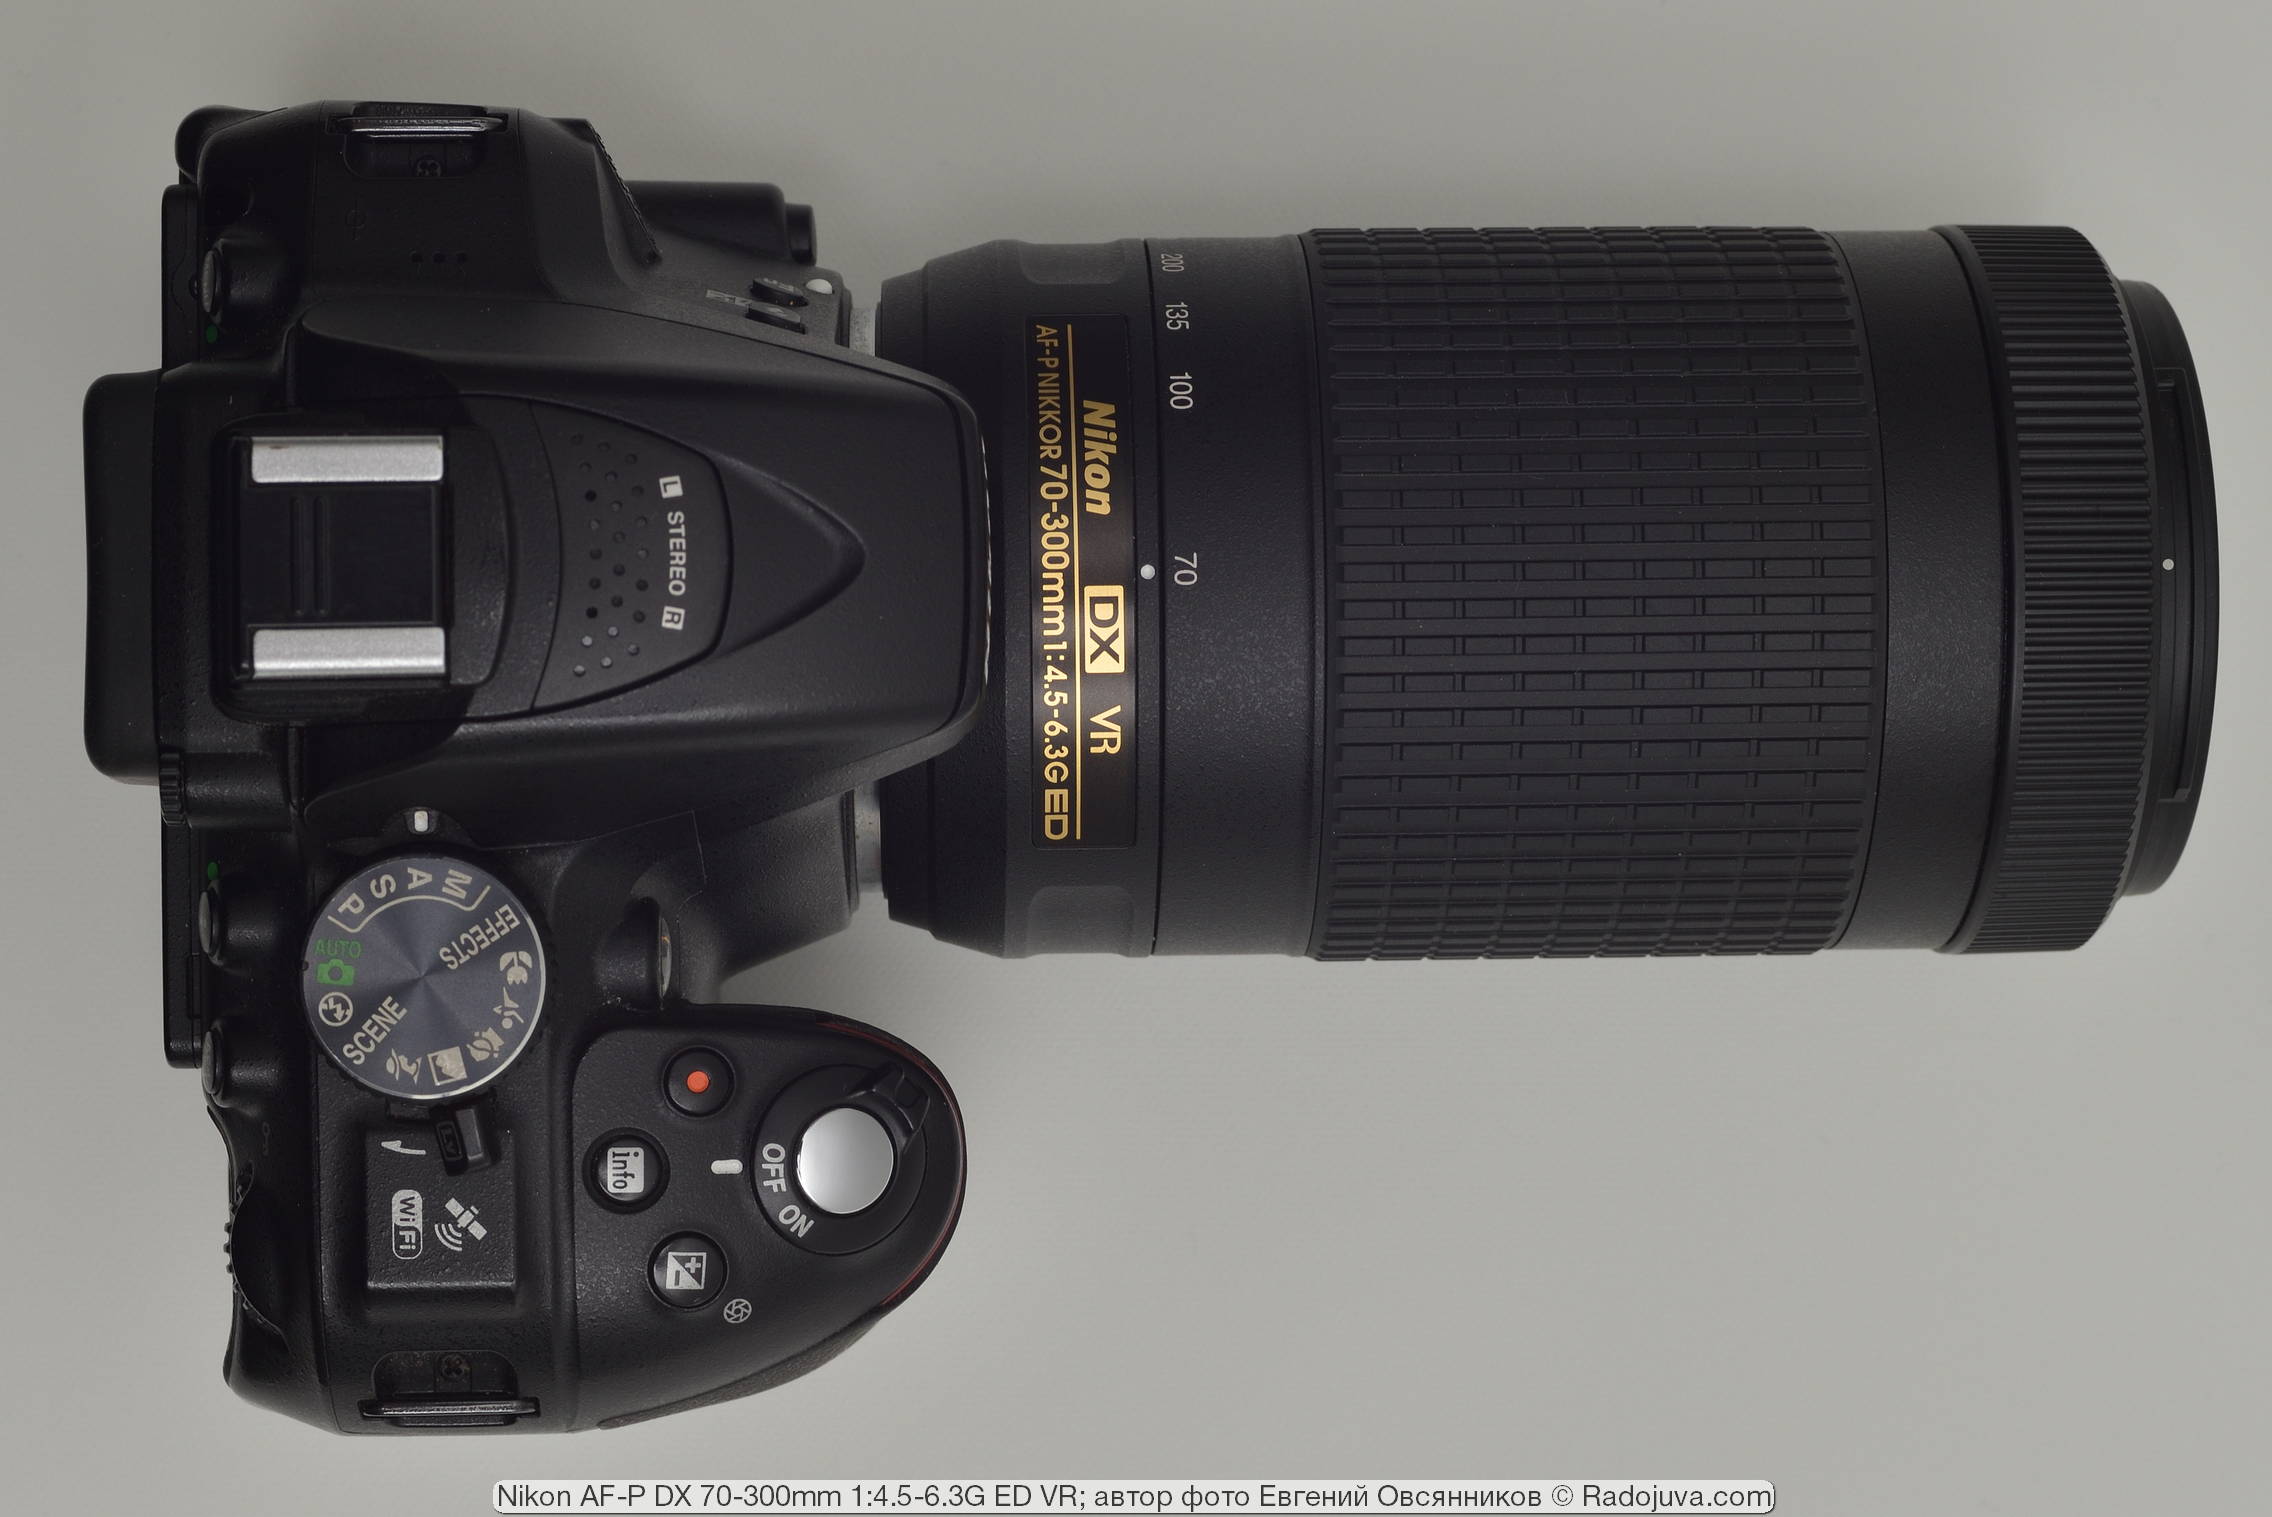 Nikon AF-P DX 70-300mm 1: 4.5-6.3G ED VR